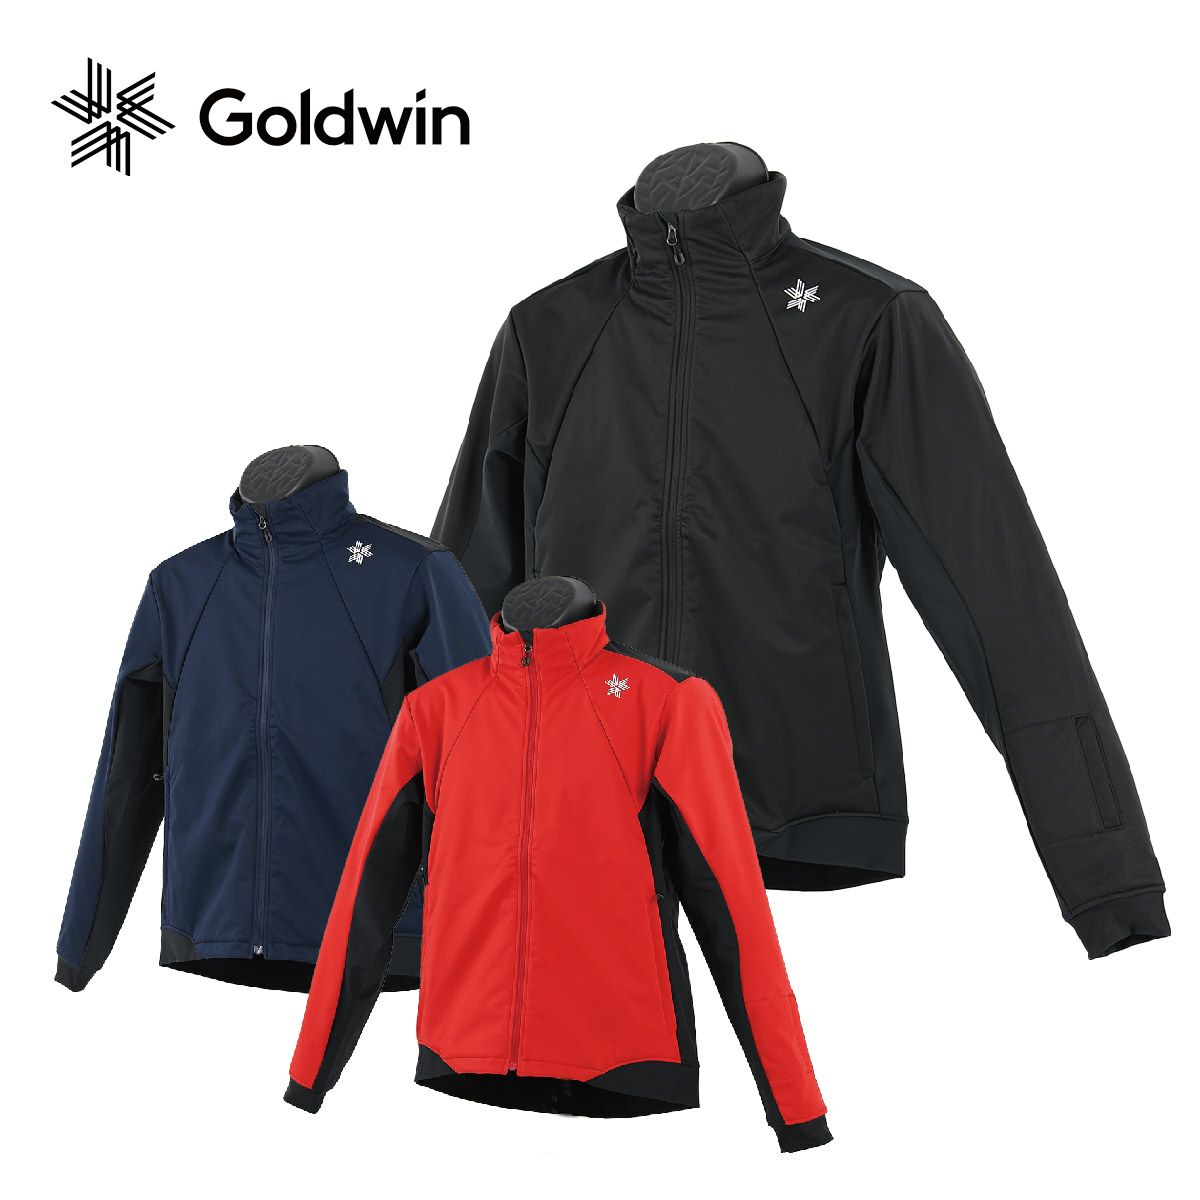 GOLDWIN／ゴールドウィン スキーウェア ウエア(男性用) スキー スポーツ・レジャー 日本直販